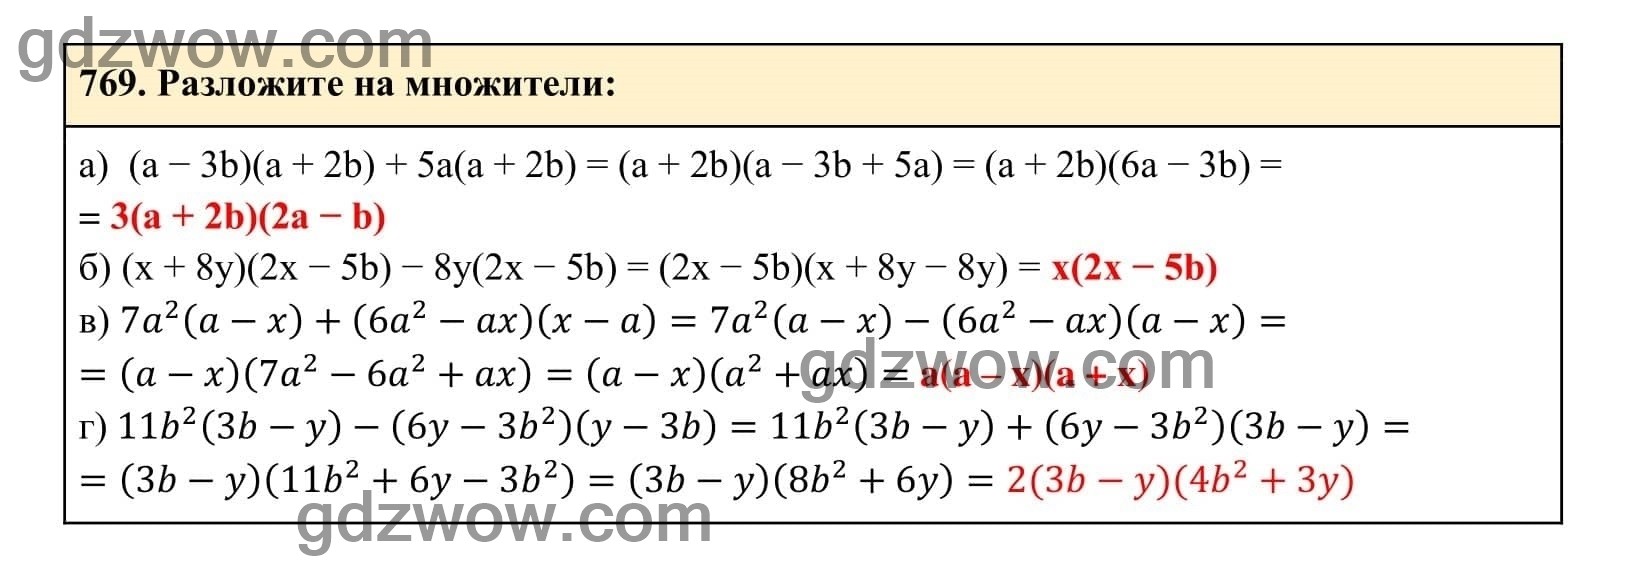 Упражнение 769 - ГДЗ по Алгебре 7 класс Учебник Макарычев (решебник) - GDZwow